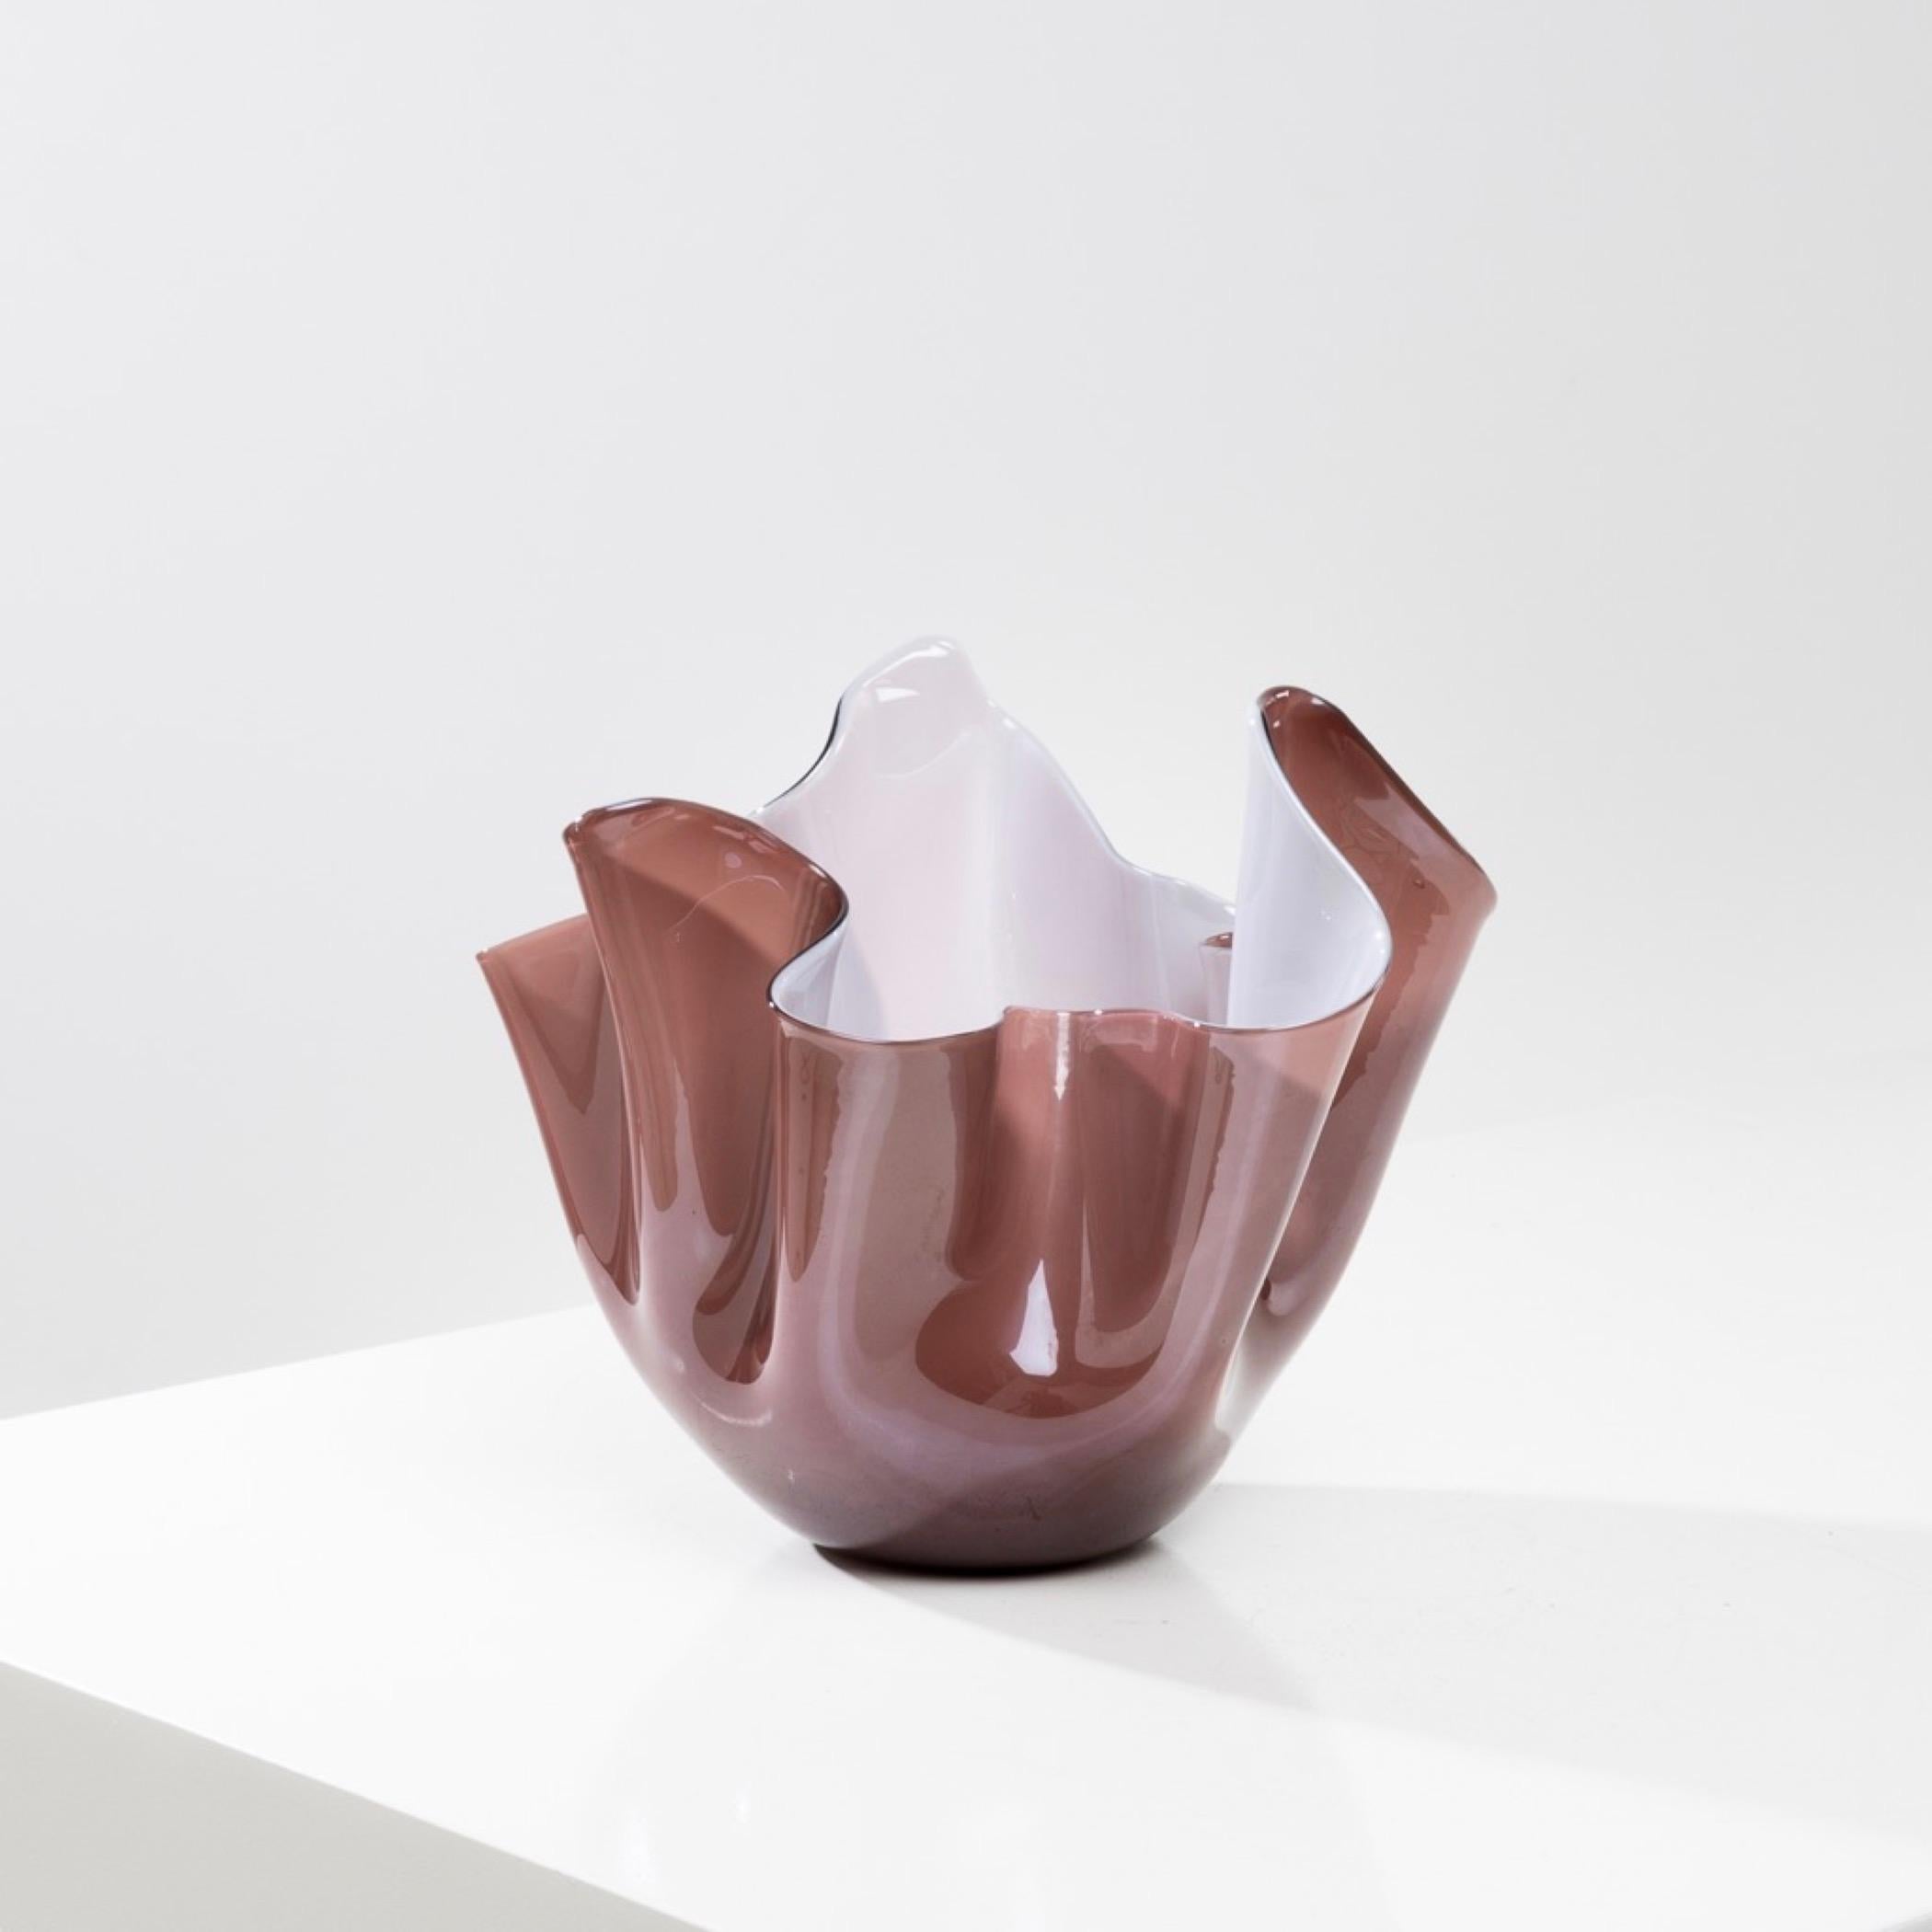 Fazzoletto by Fulvio Bianconi – Handkerchief vase – Venini Murano For Sale 2